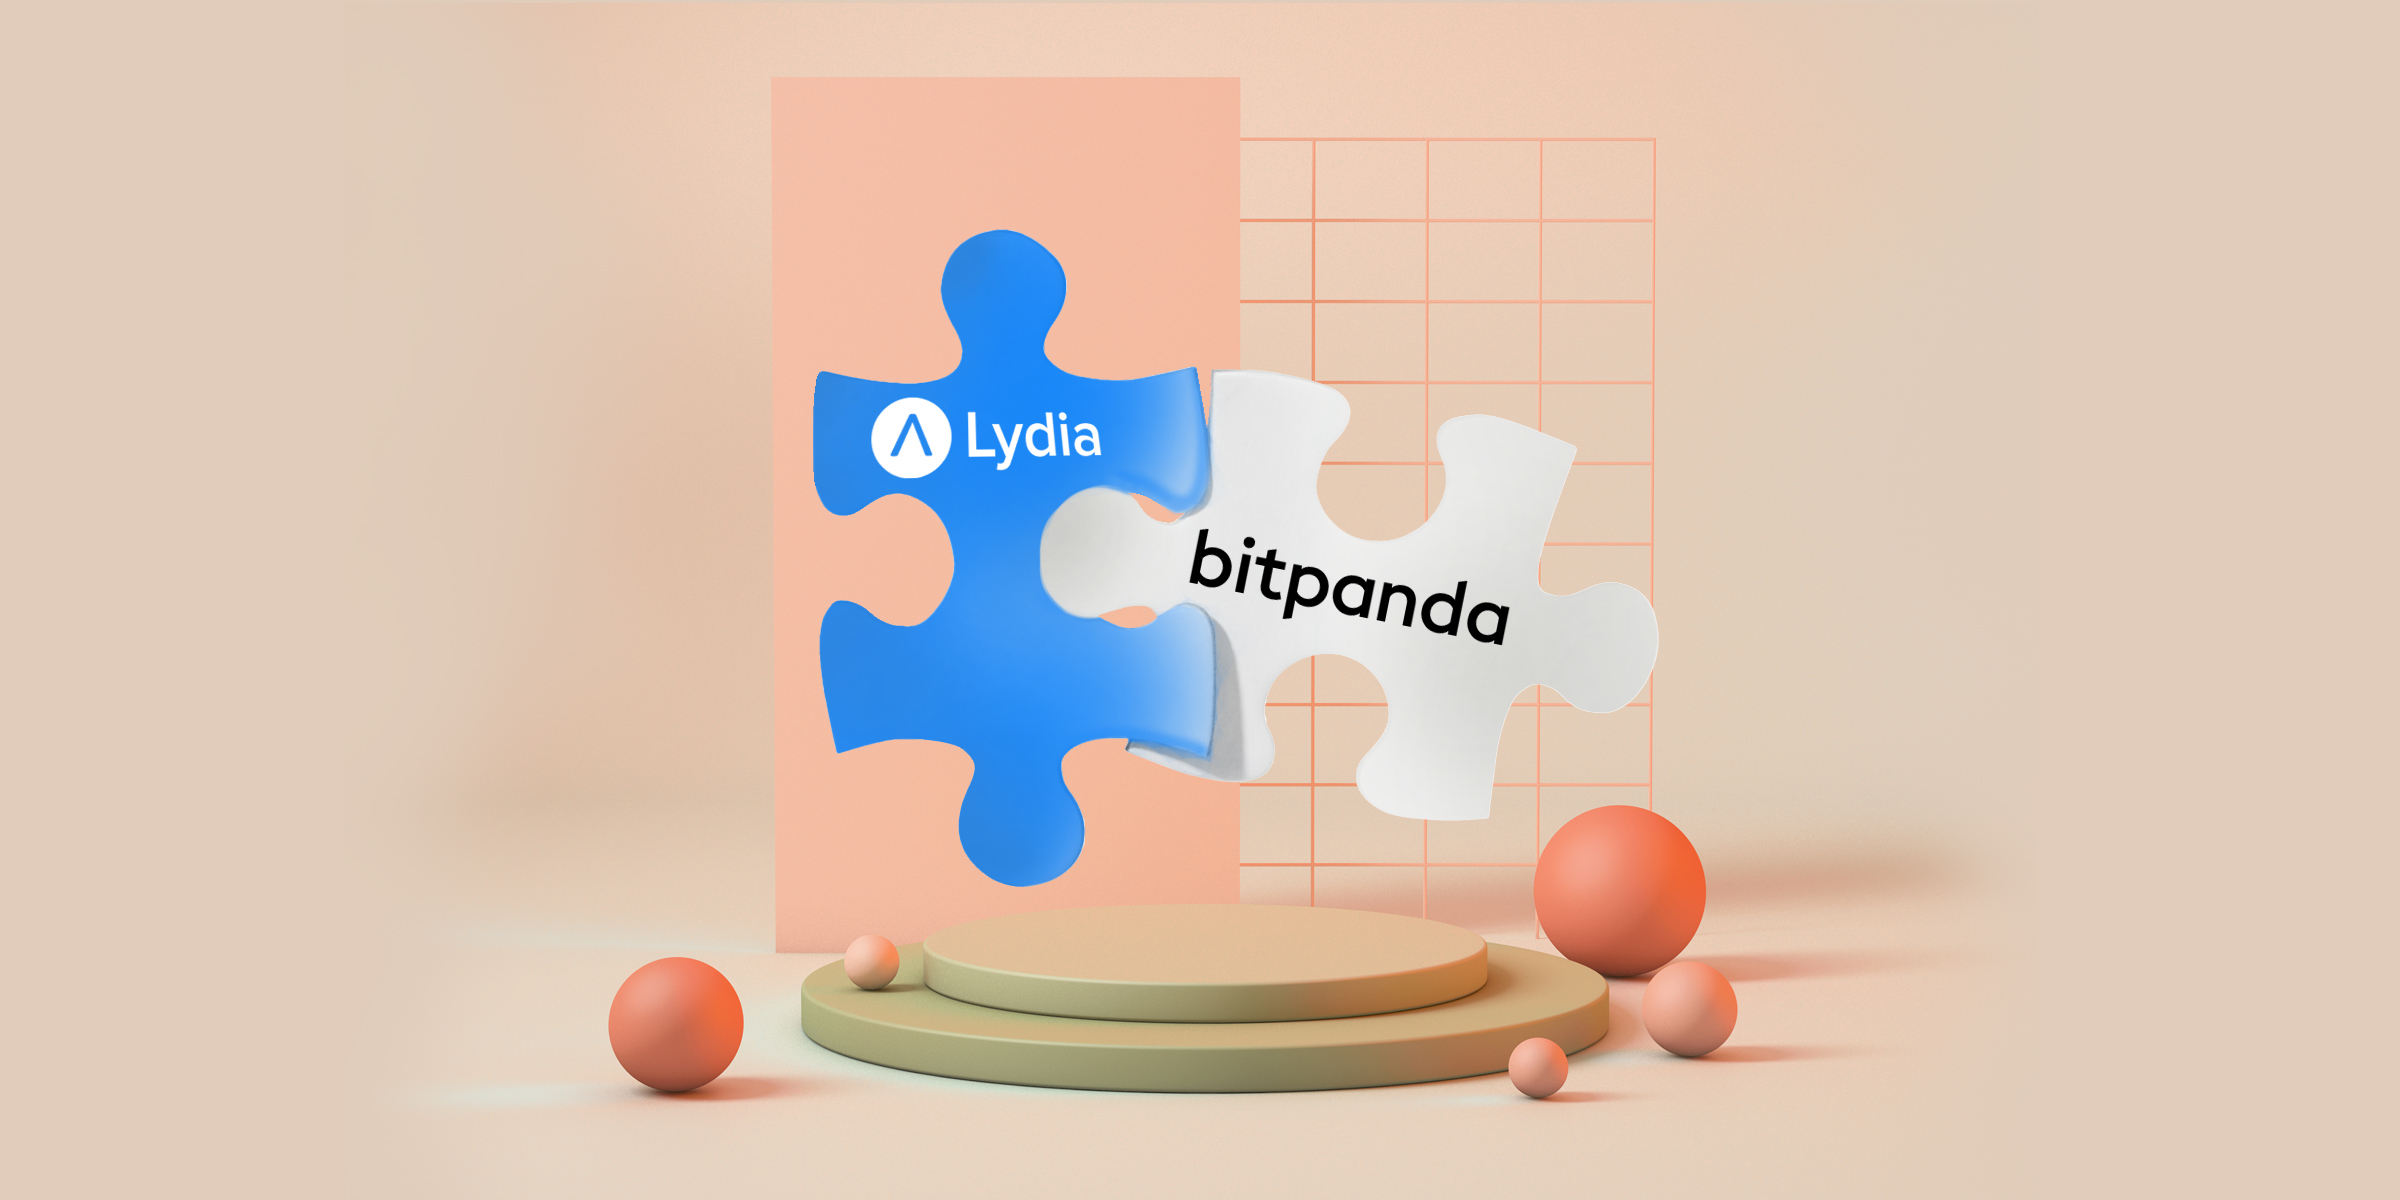 Lydia and Bitpanda